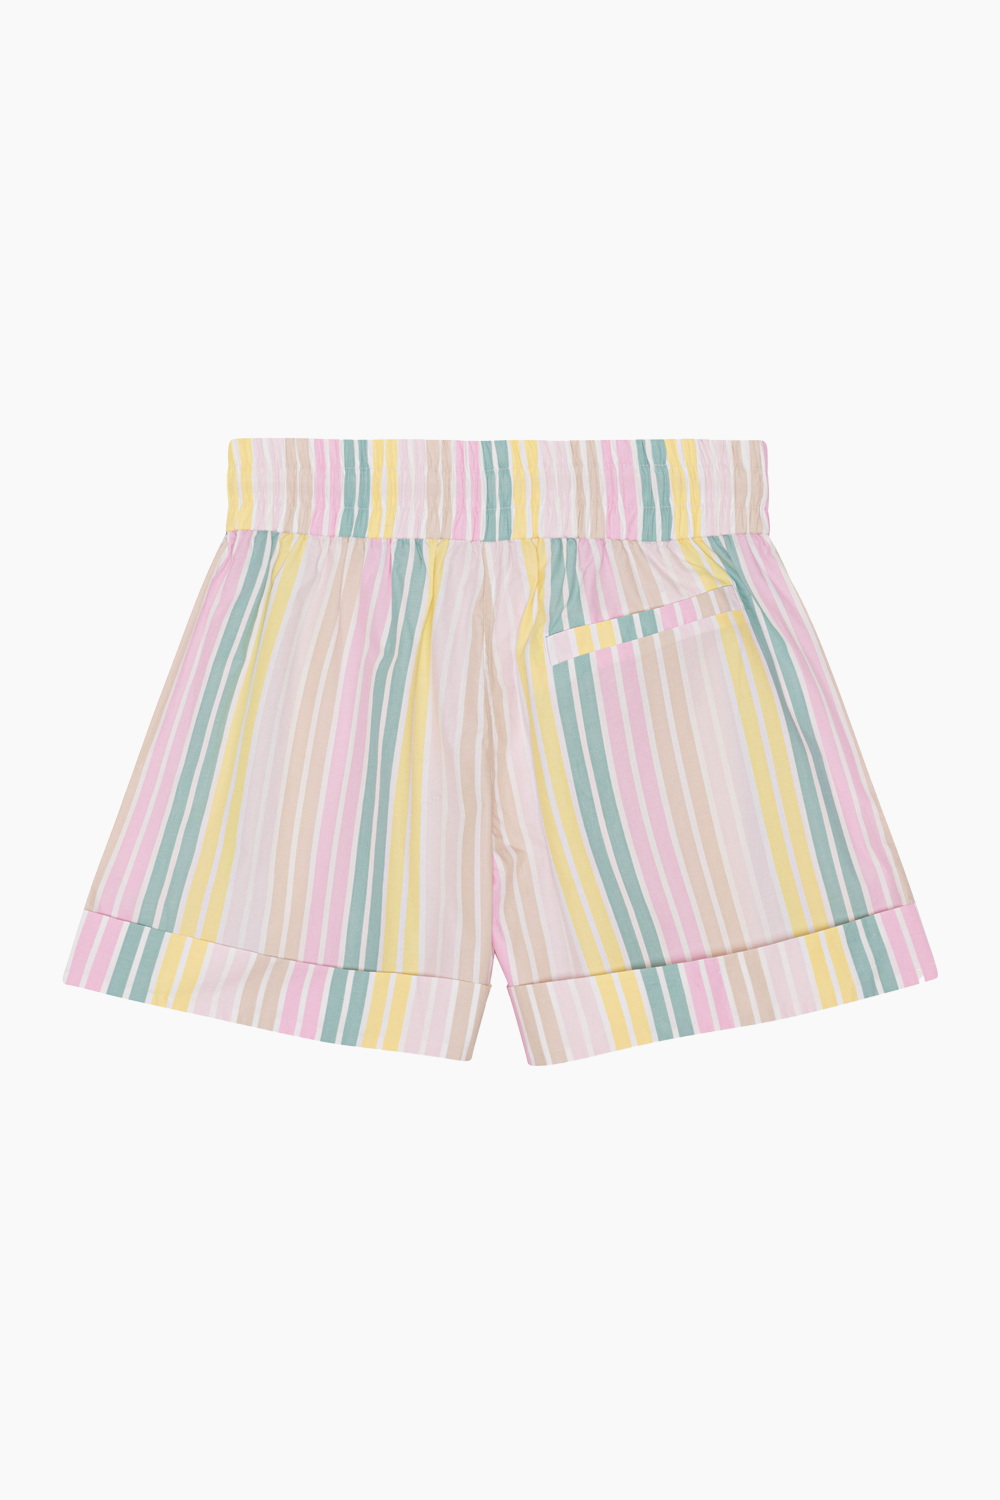 Stripe Cotton Elasticated Shorts  F7768 - Multicolor - GANNI